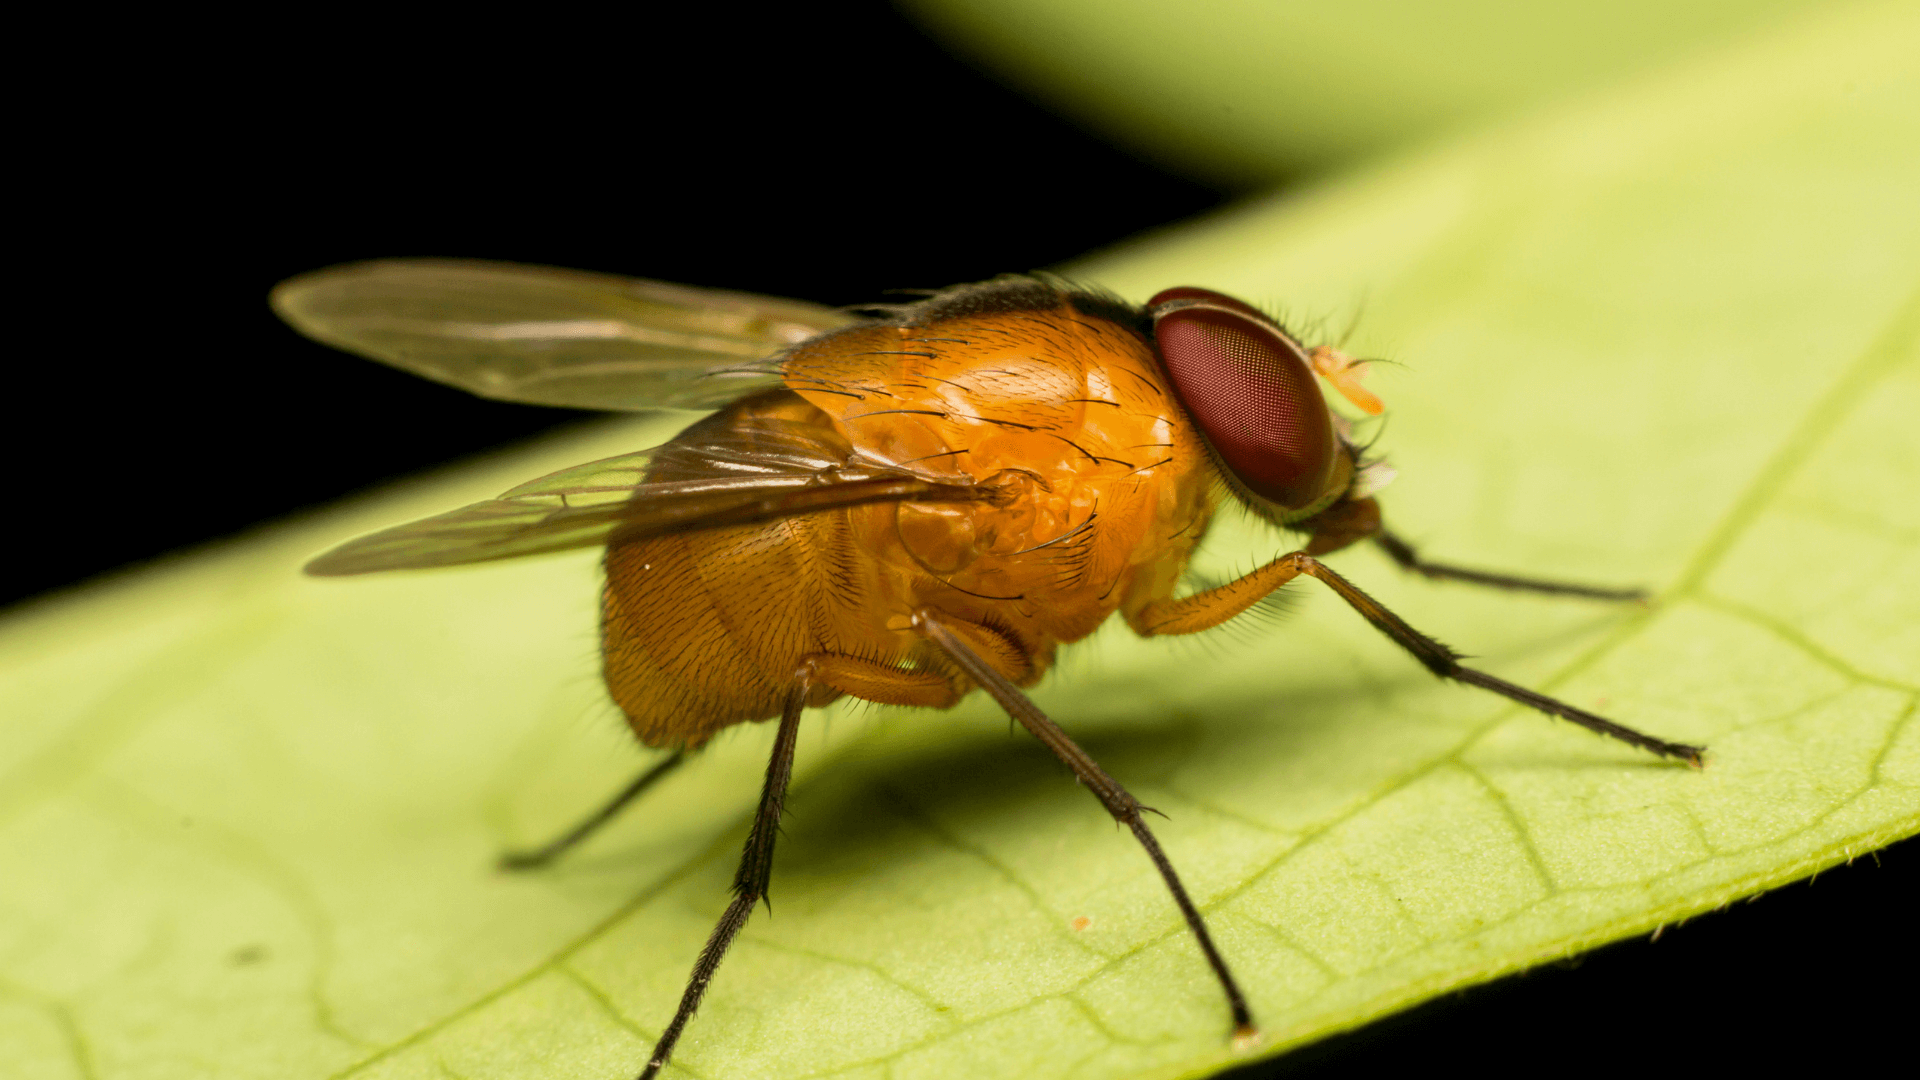 Mediterranean Fruit Fly on a leaf